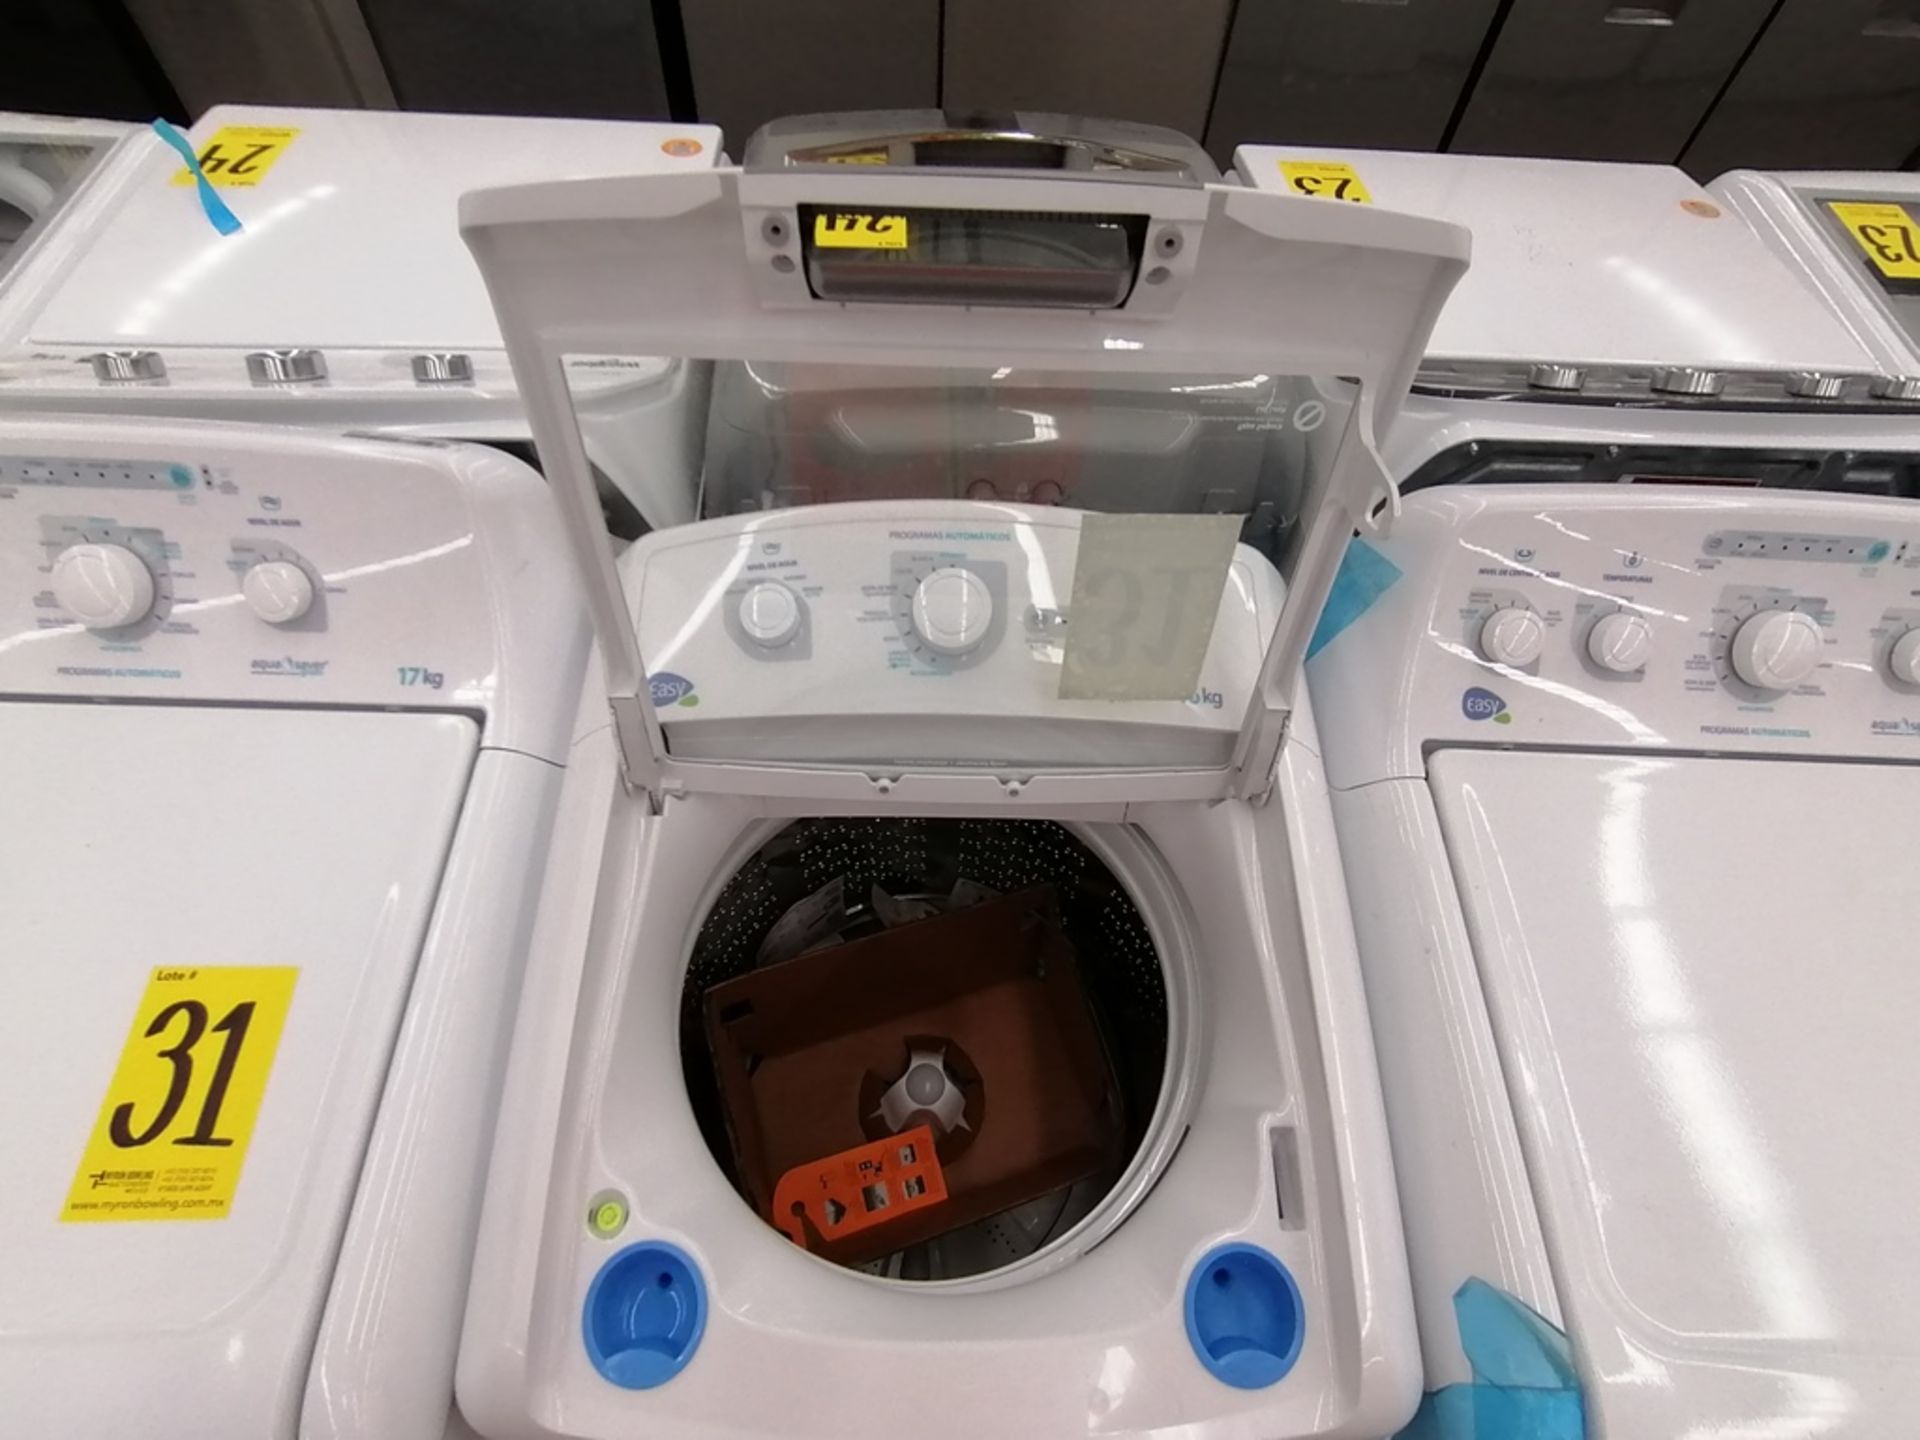 Lote de 3 lavadoras contiene: 1 Lavadora de 17KG, Marca Easy, Modelo LEA77114CBAB03, Serie 2105S522 - Image 6 of 30